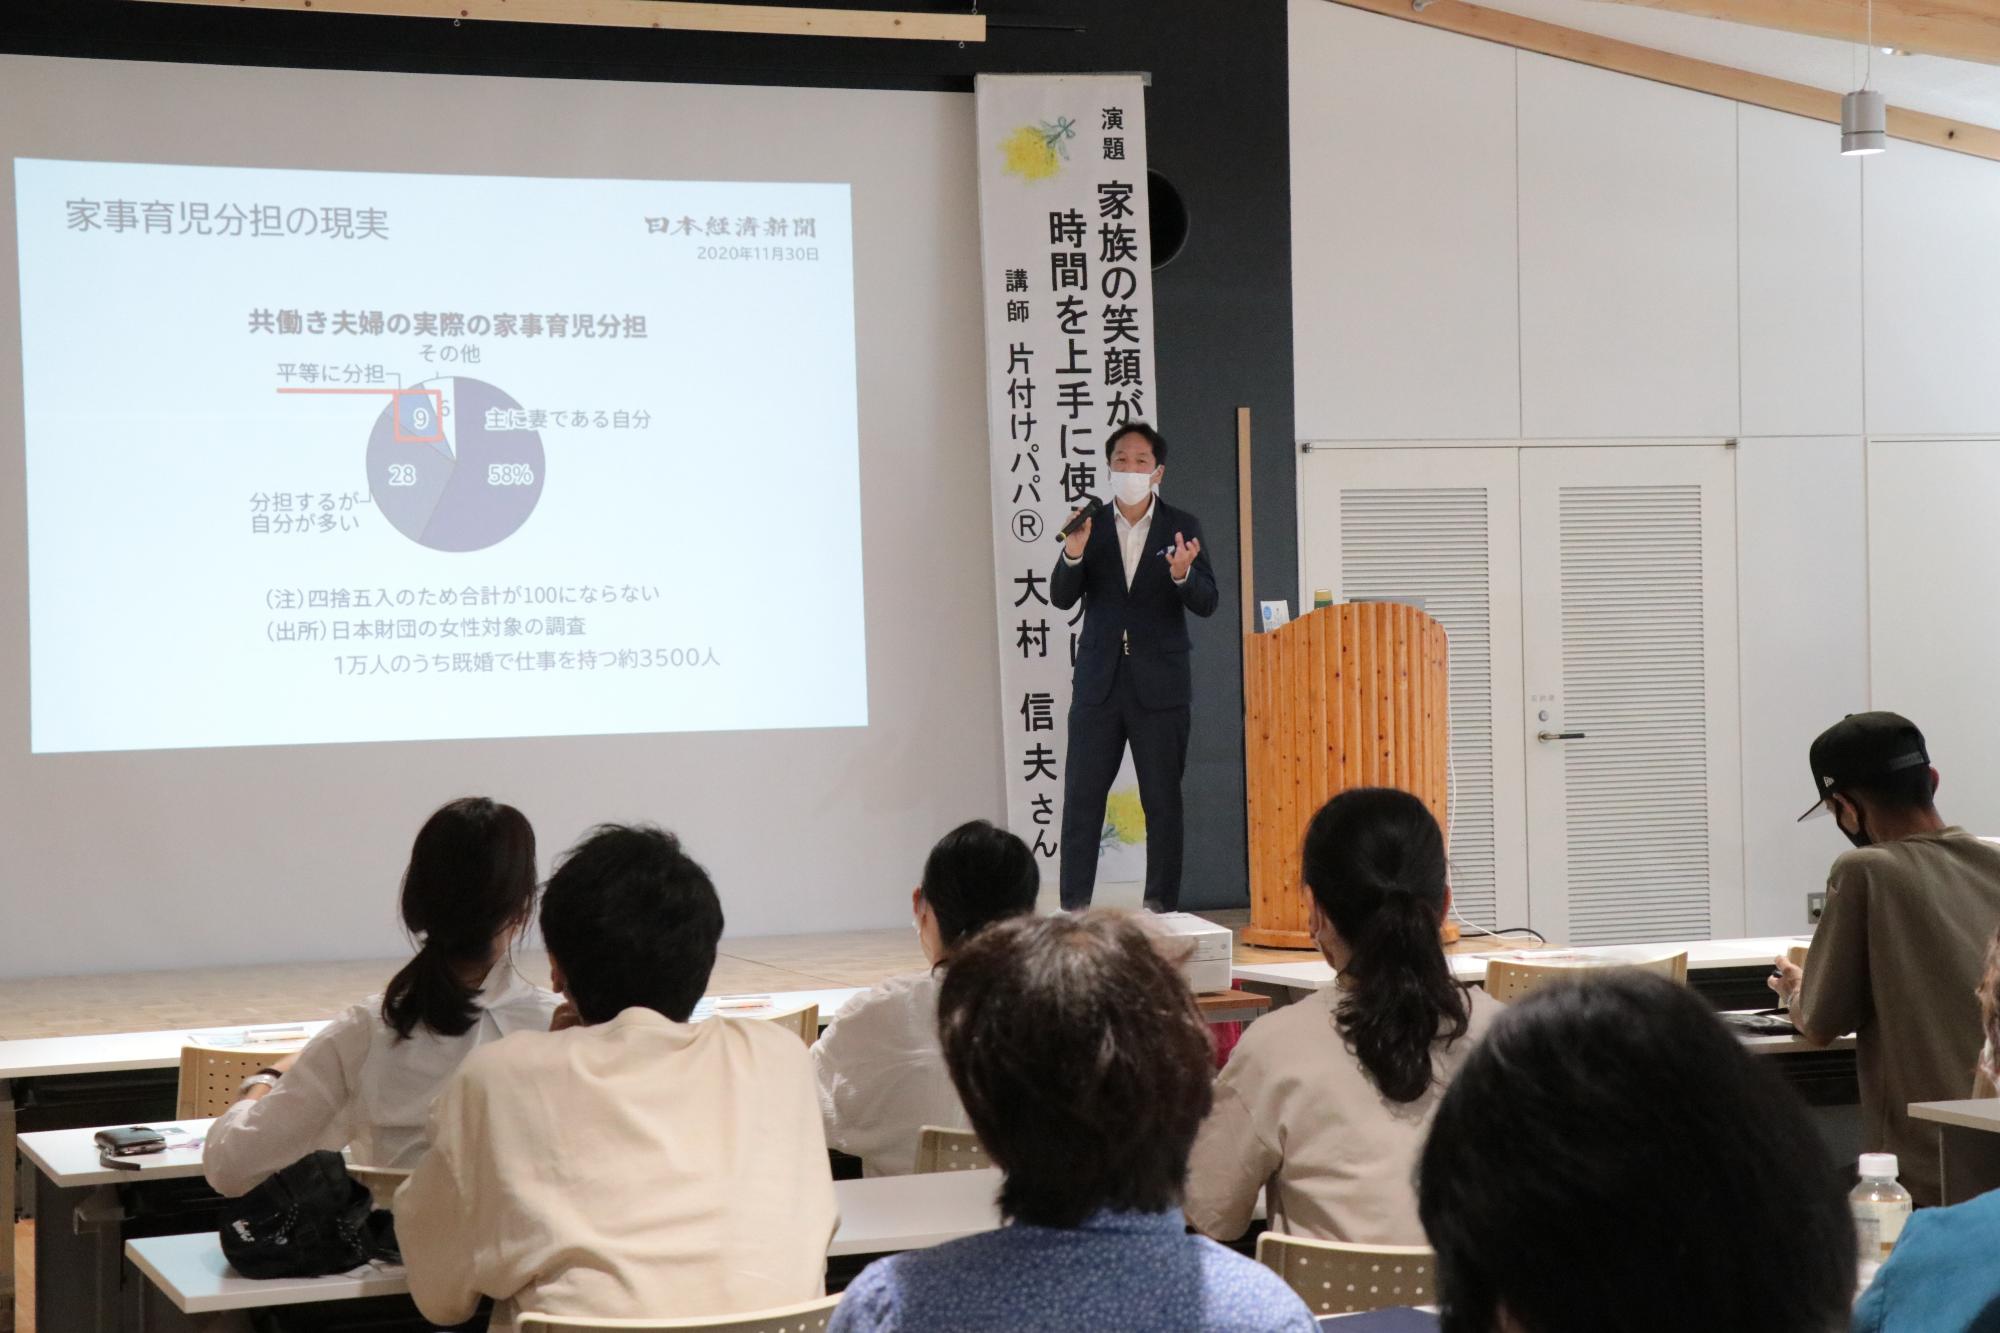 いちのぴあで開かれたフォーラムで講演をする講師の大村信夫さんと講演を聴く参加者らの写真